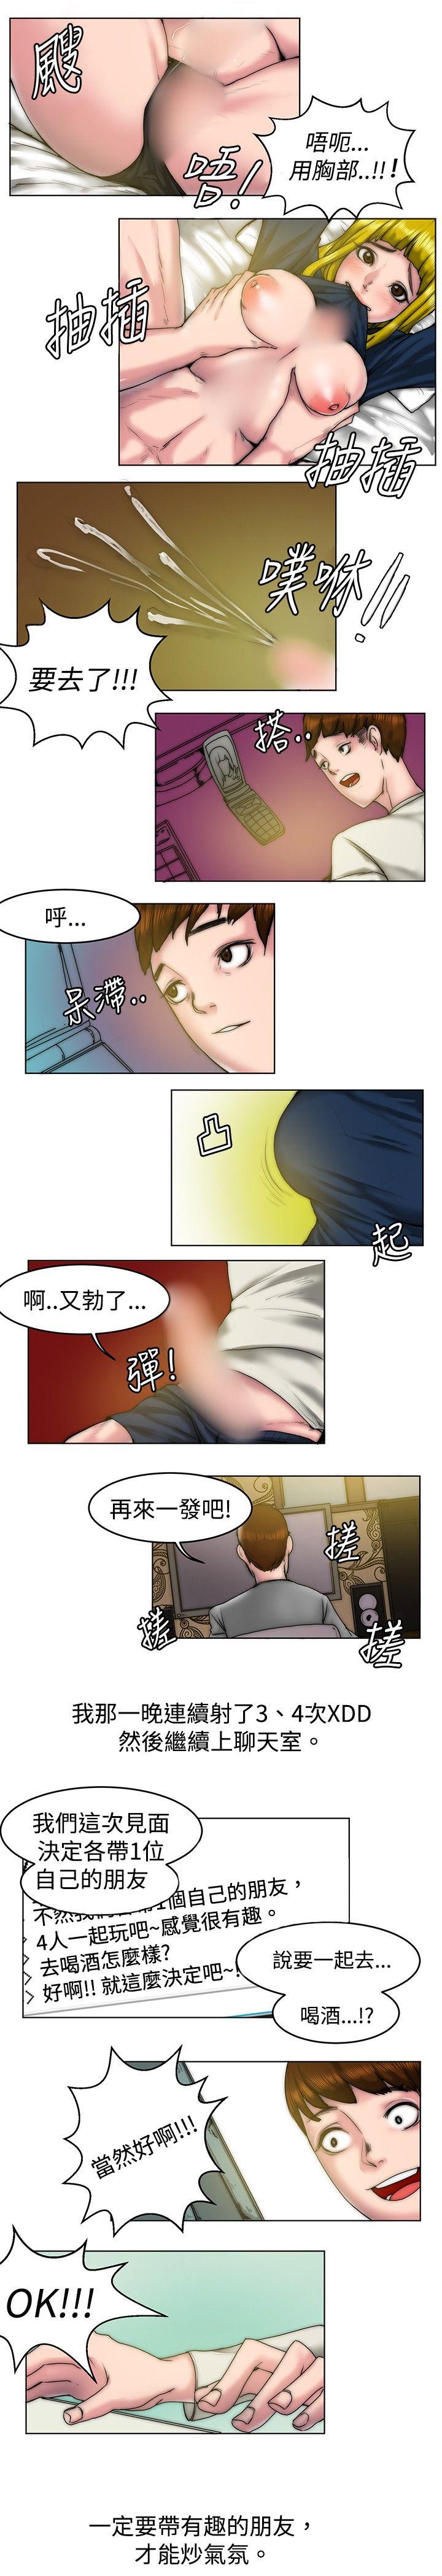 秘密Story  初恋被朋友抢(上) 漫画图片11.jpg